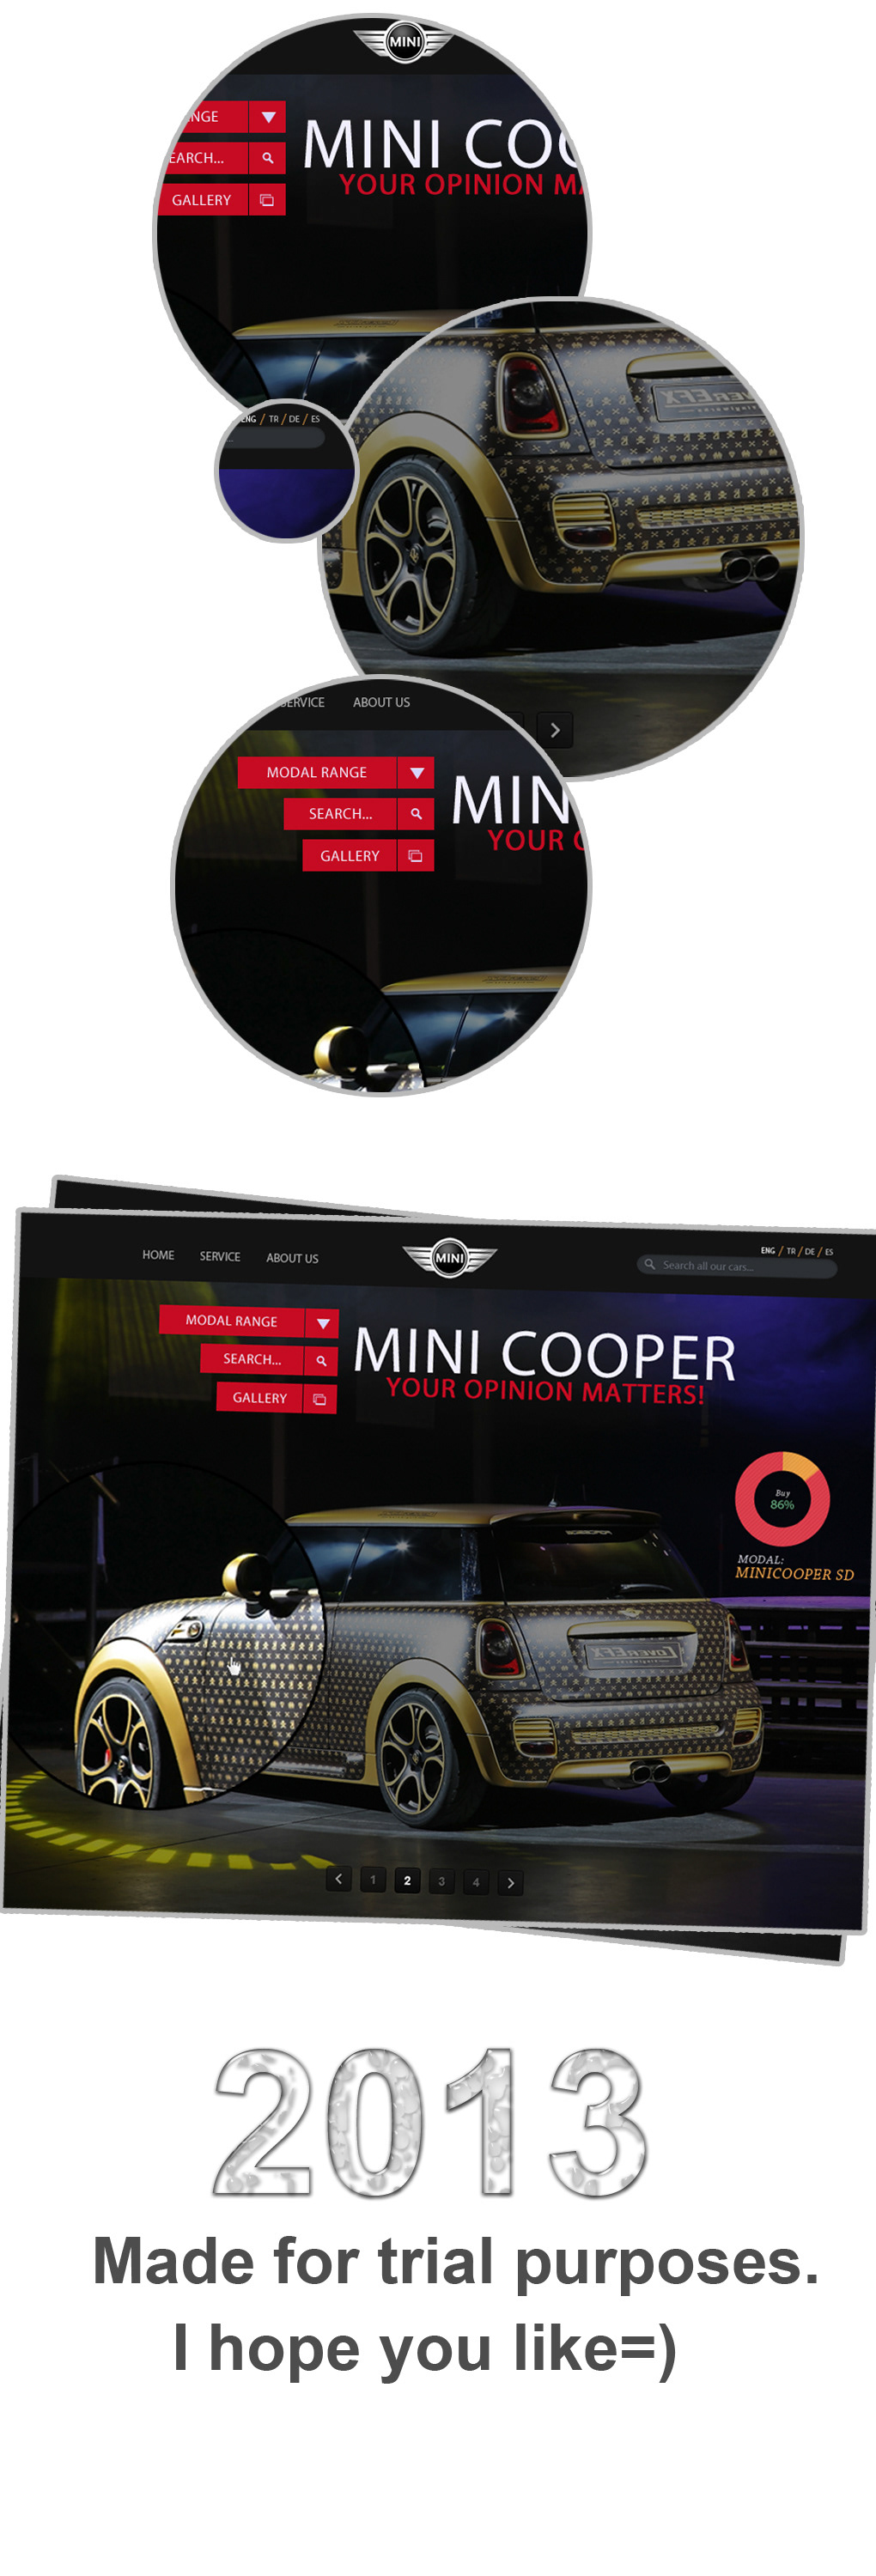 MINI Cooper modals 2013 Mini Cooper Site Mini Cooper